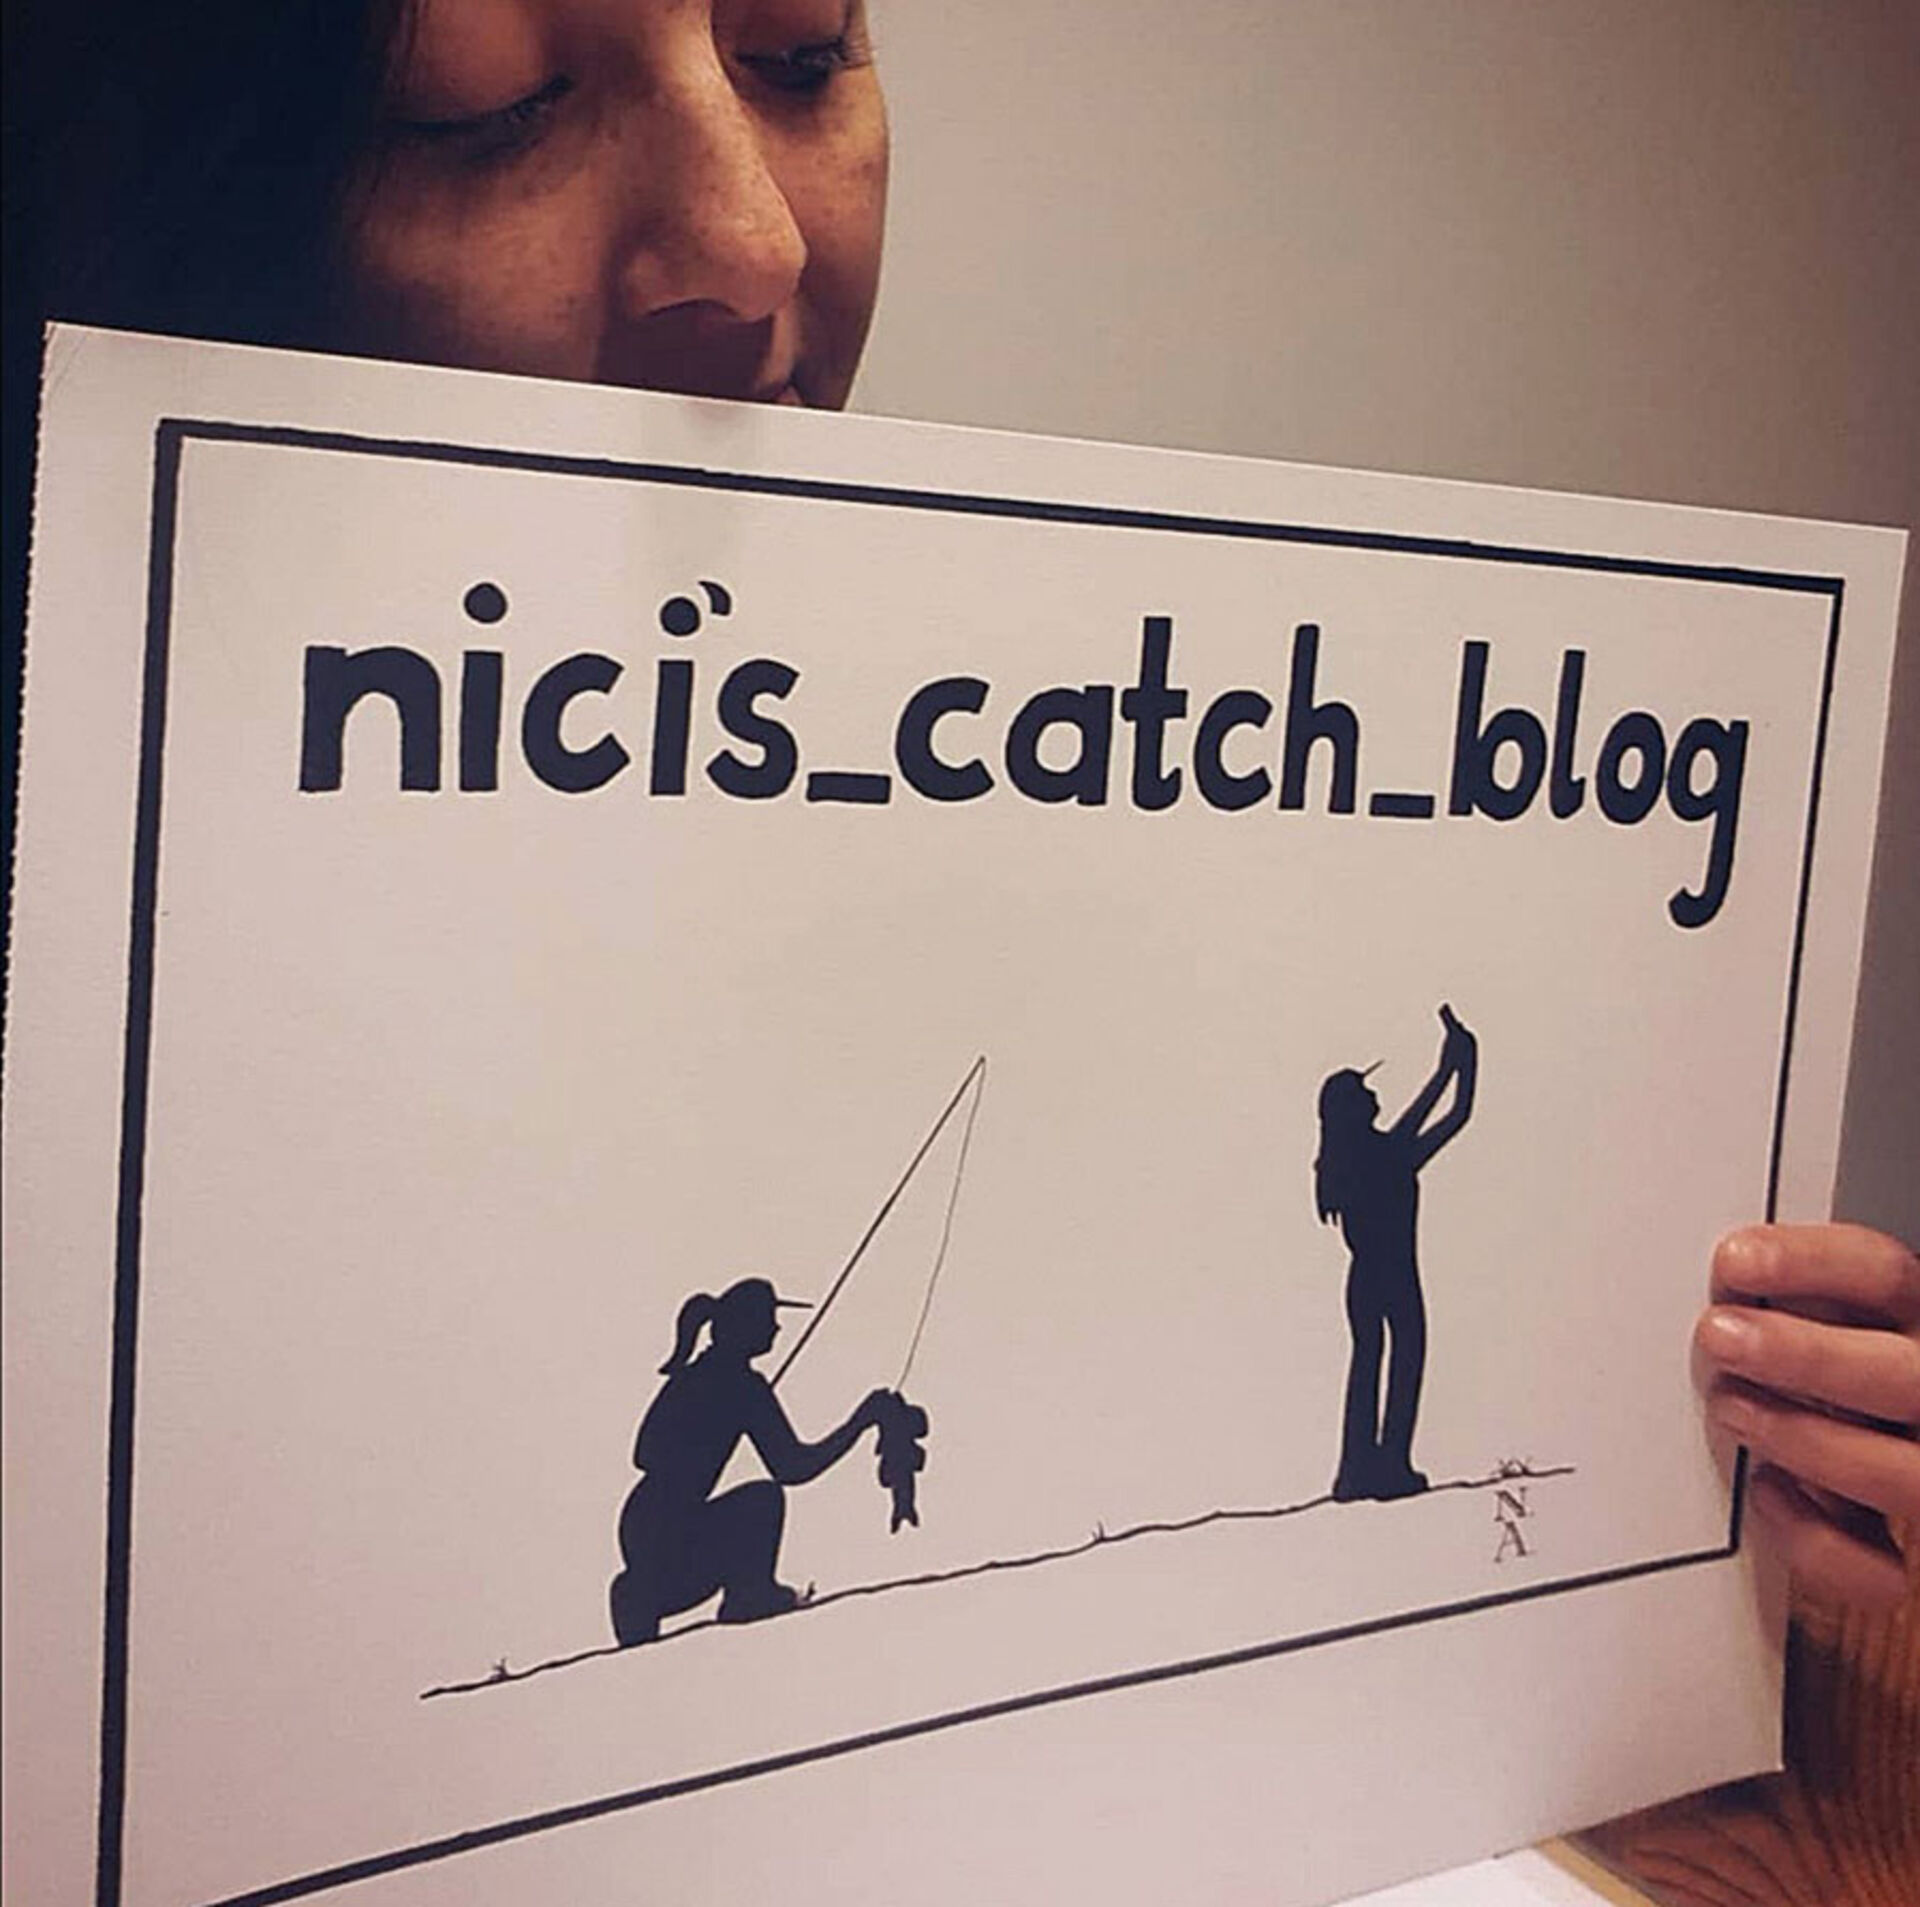  Nicole Ametovski zeigt auf Instagram ihr erstes selbst gestaltetes Logo.  